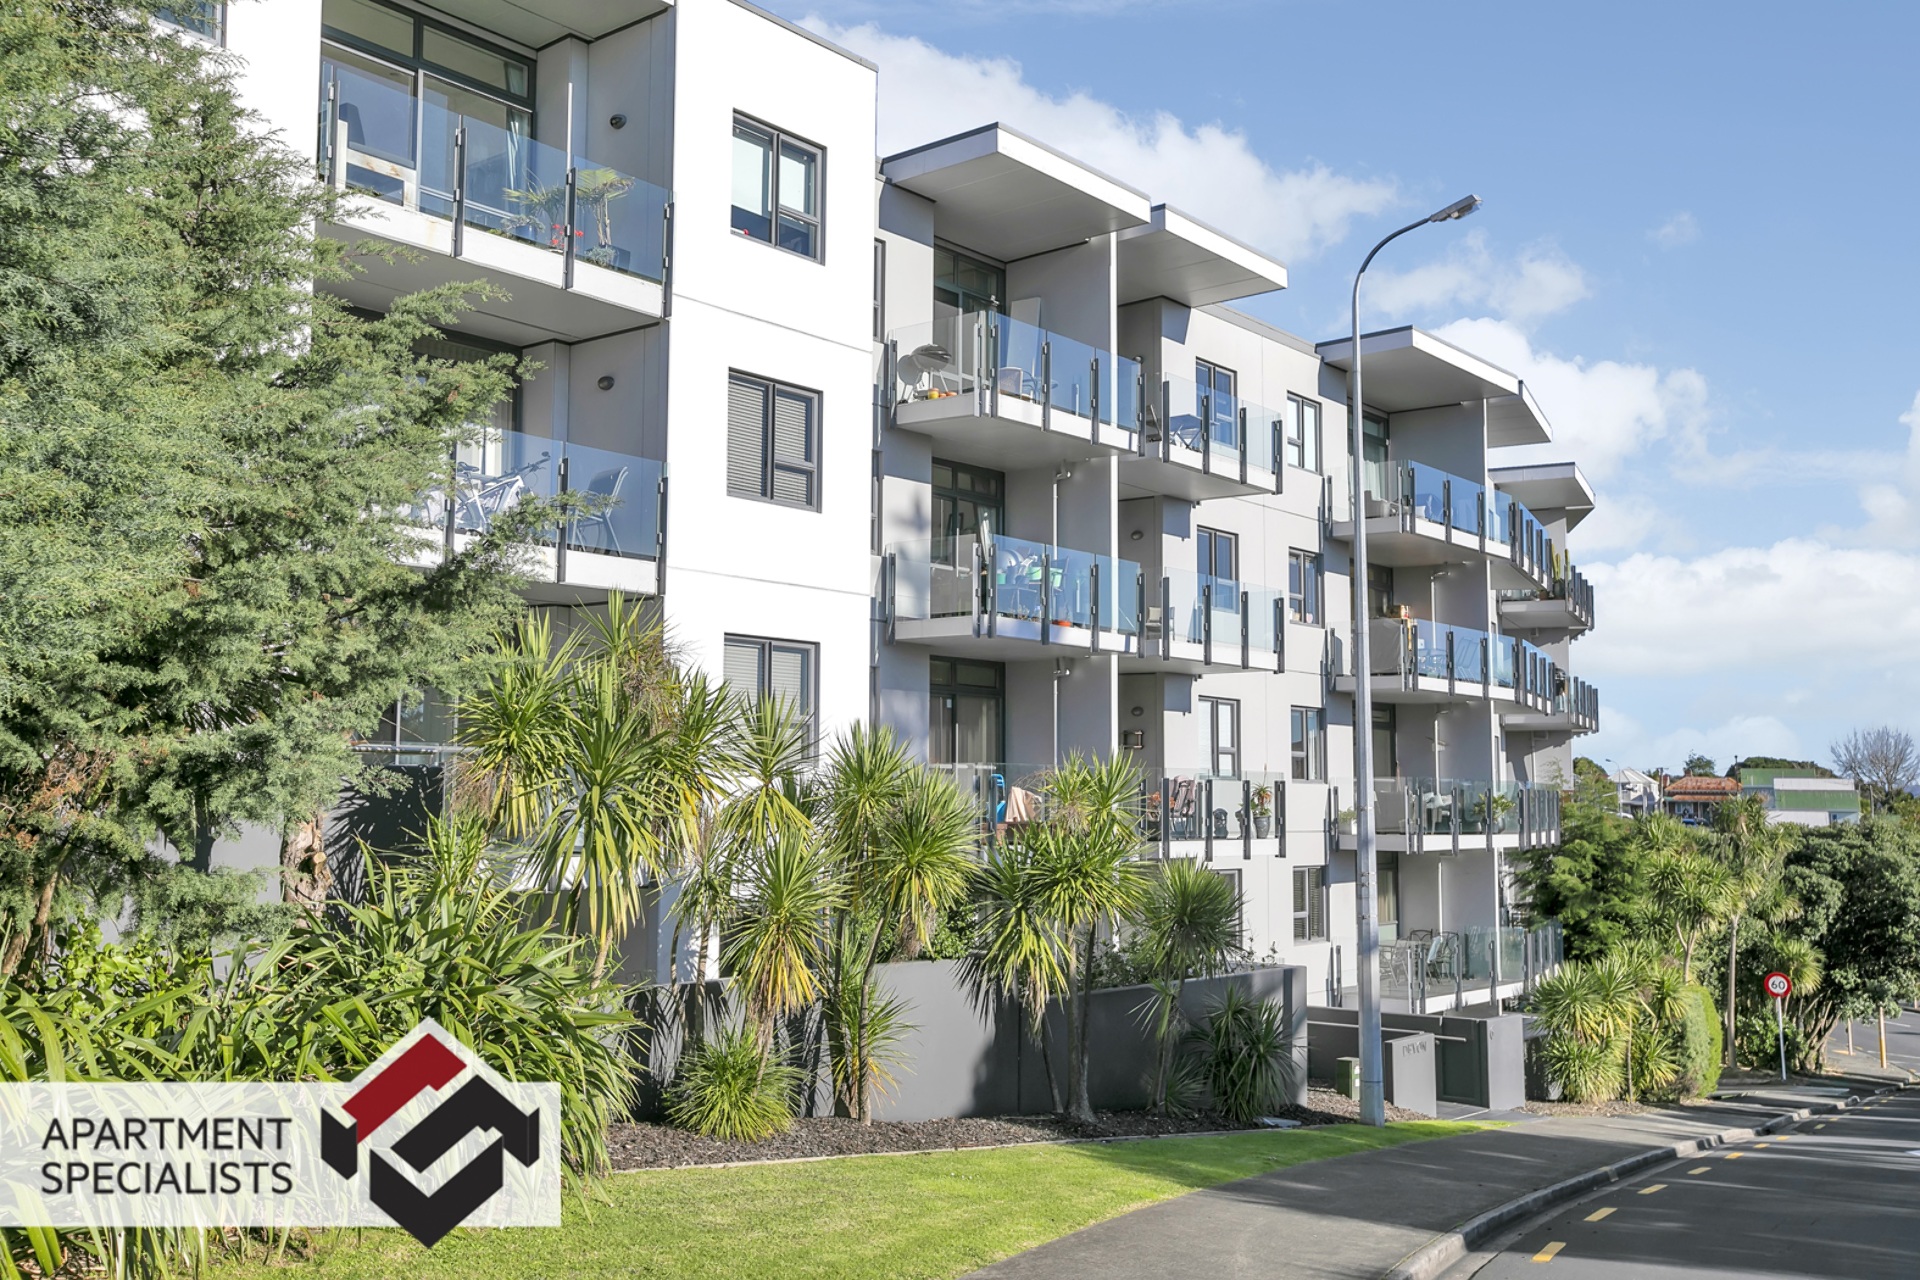 2 | 6 Piwakawaka, Eden Terrace | Apartment Specialists